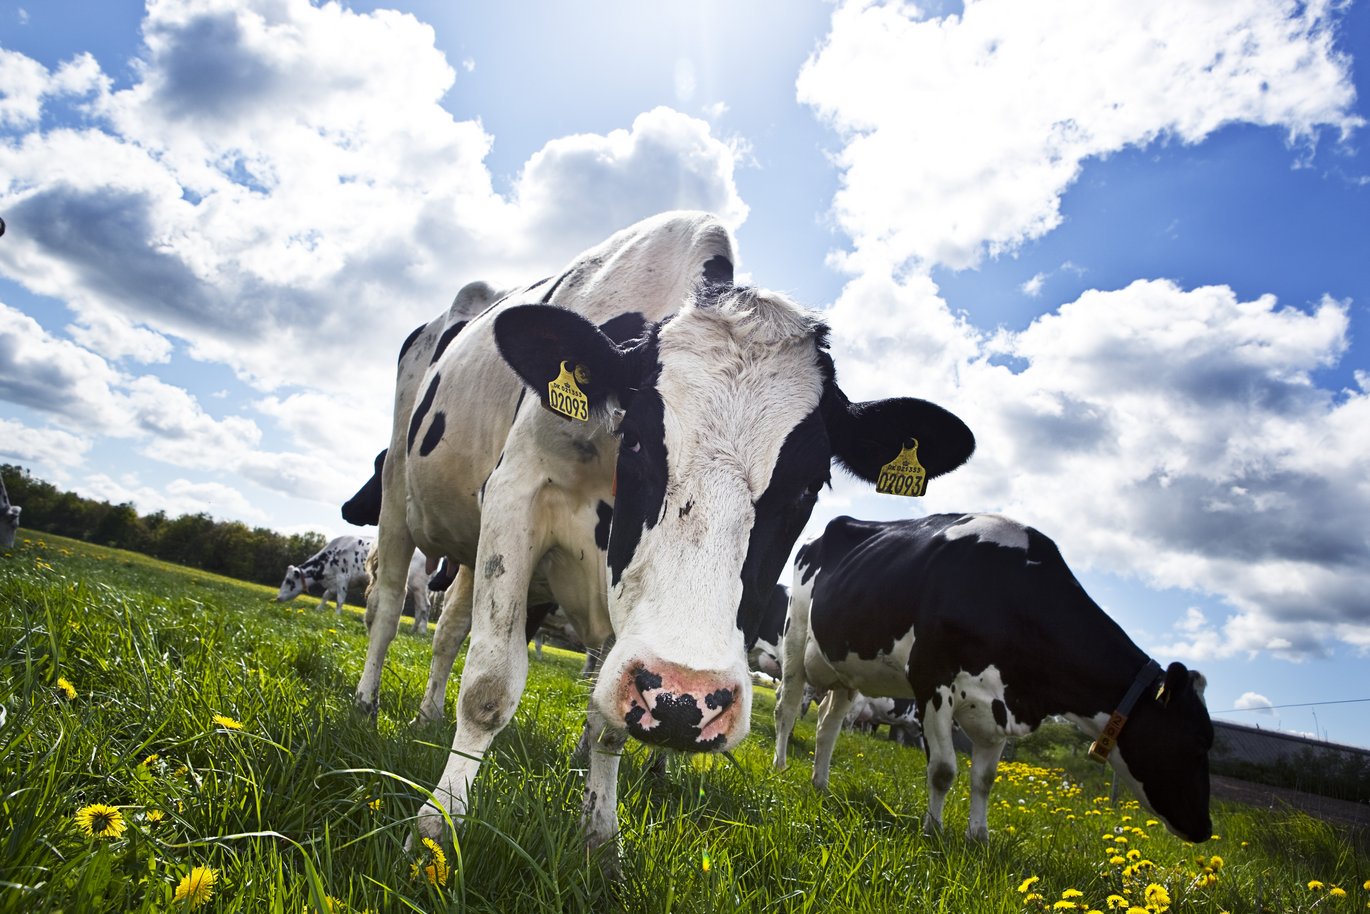 Kobøvsernes indhold af methan kan nedsættes samtidig med at køernes foderudnyttelse forbedres via målrettet avlsarbejde. Foto: Jesper Rais